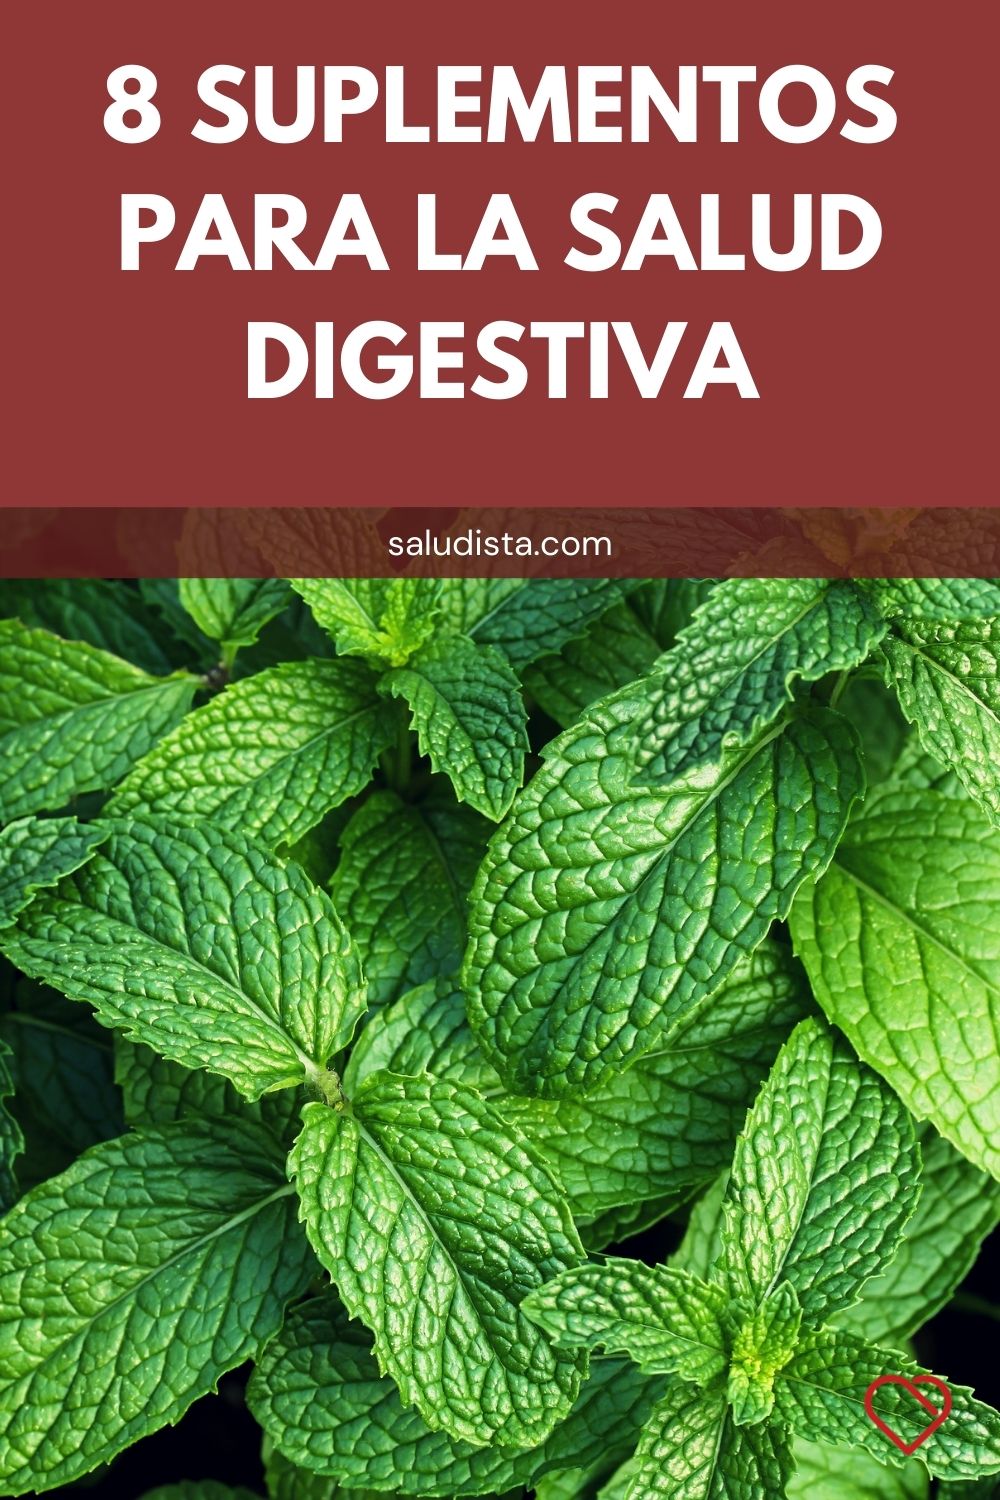 8 Suplementos para la salud digestiva